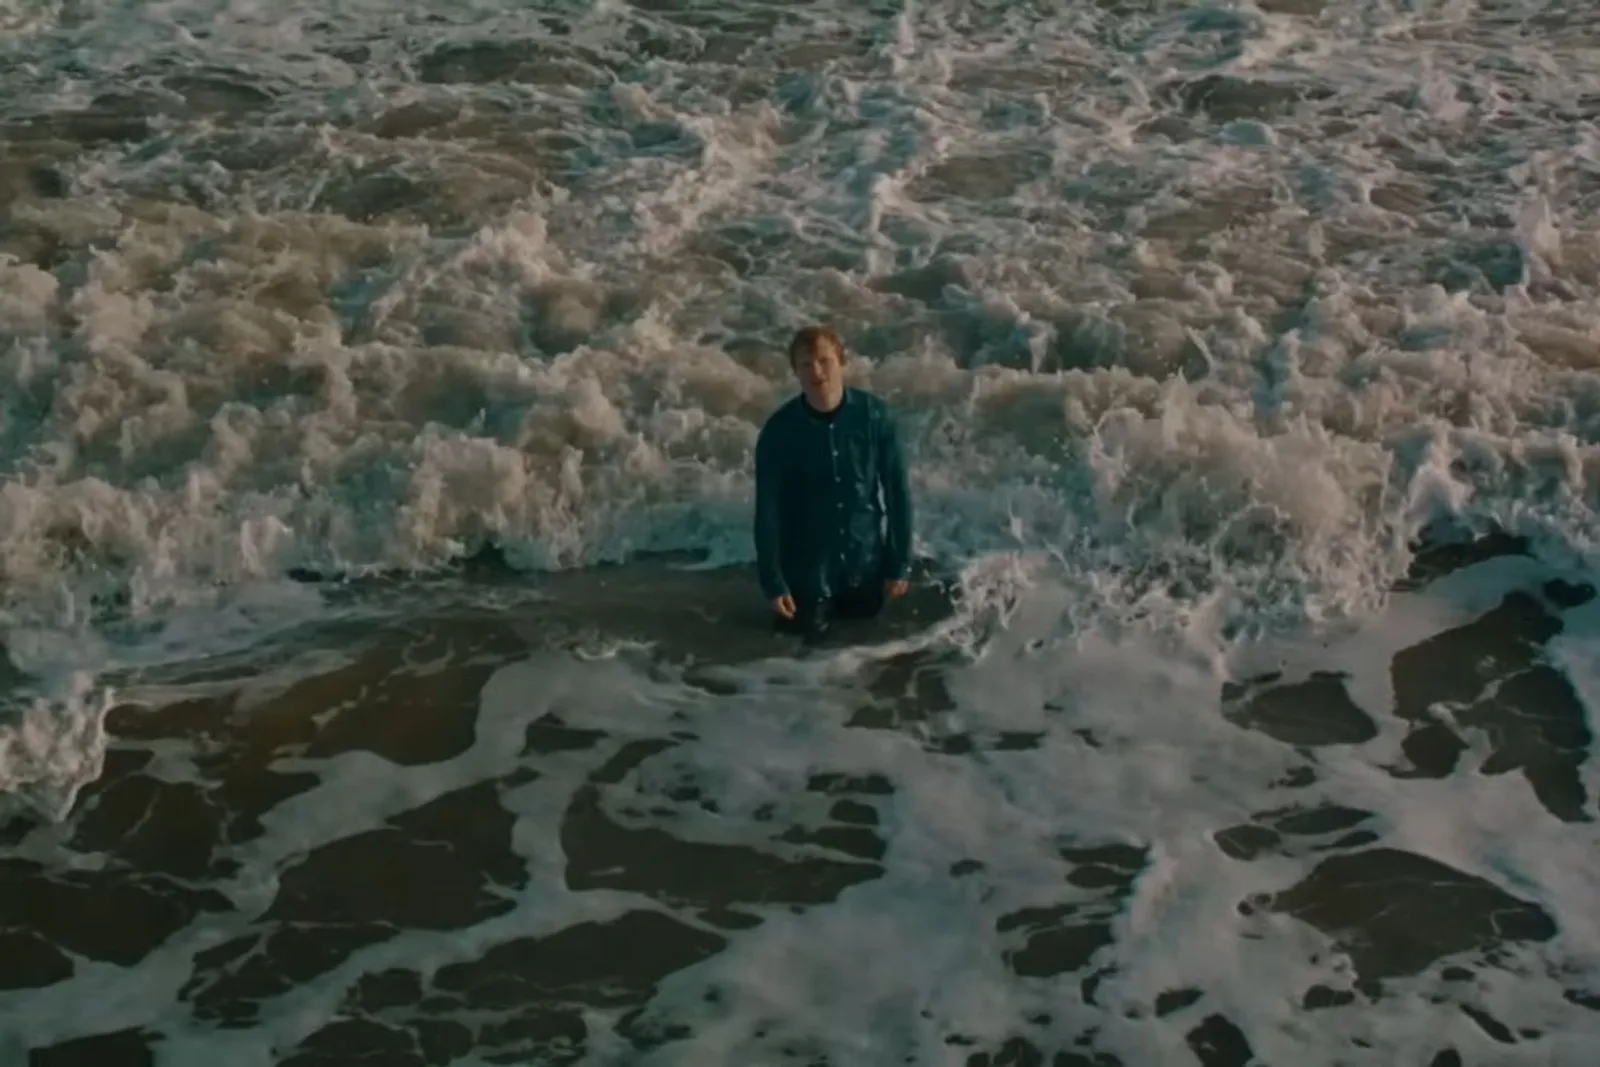 Metafora Perasaan Depresi, Ini Lirik Lagu "Boat" Milik Ed Sheeran